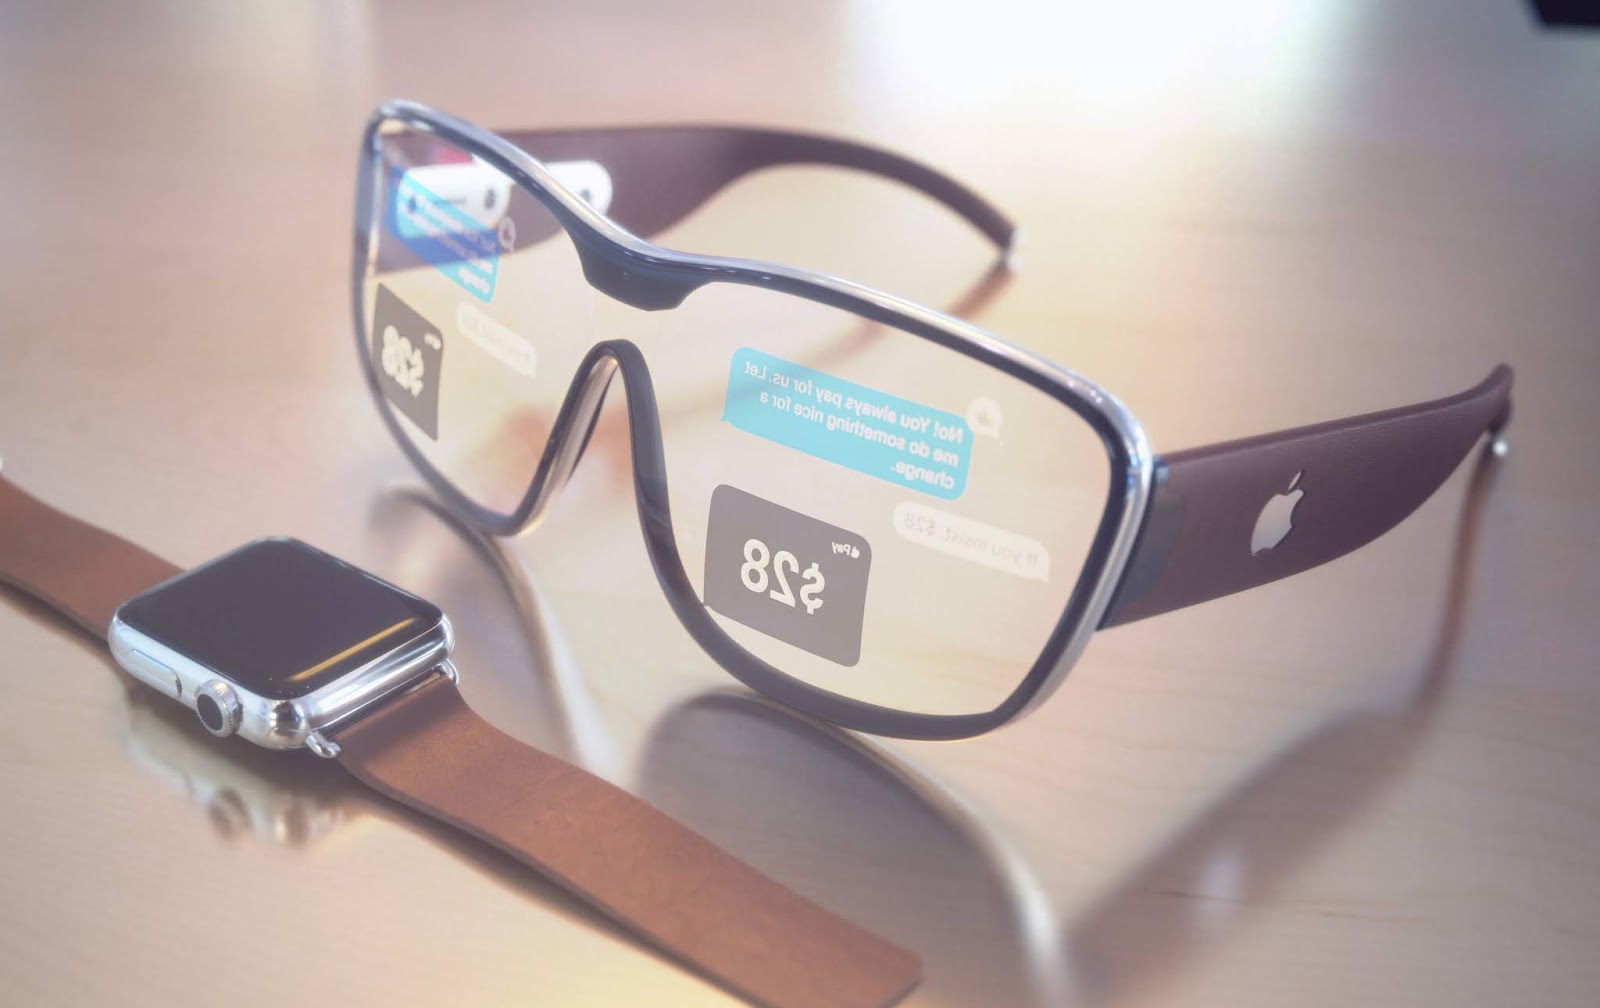 蘋果 AR 眼鏡讓任何表面都能觸控：用戶變身造物主 | Apple Glass, Apple News, 蘋果專利, 蘋果眼鏡 | iPhone News 愛瘋了